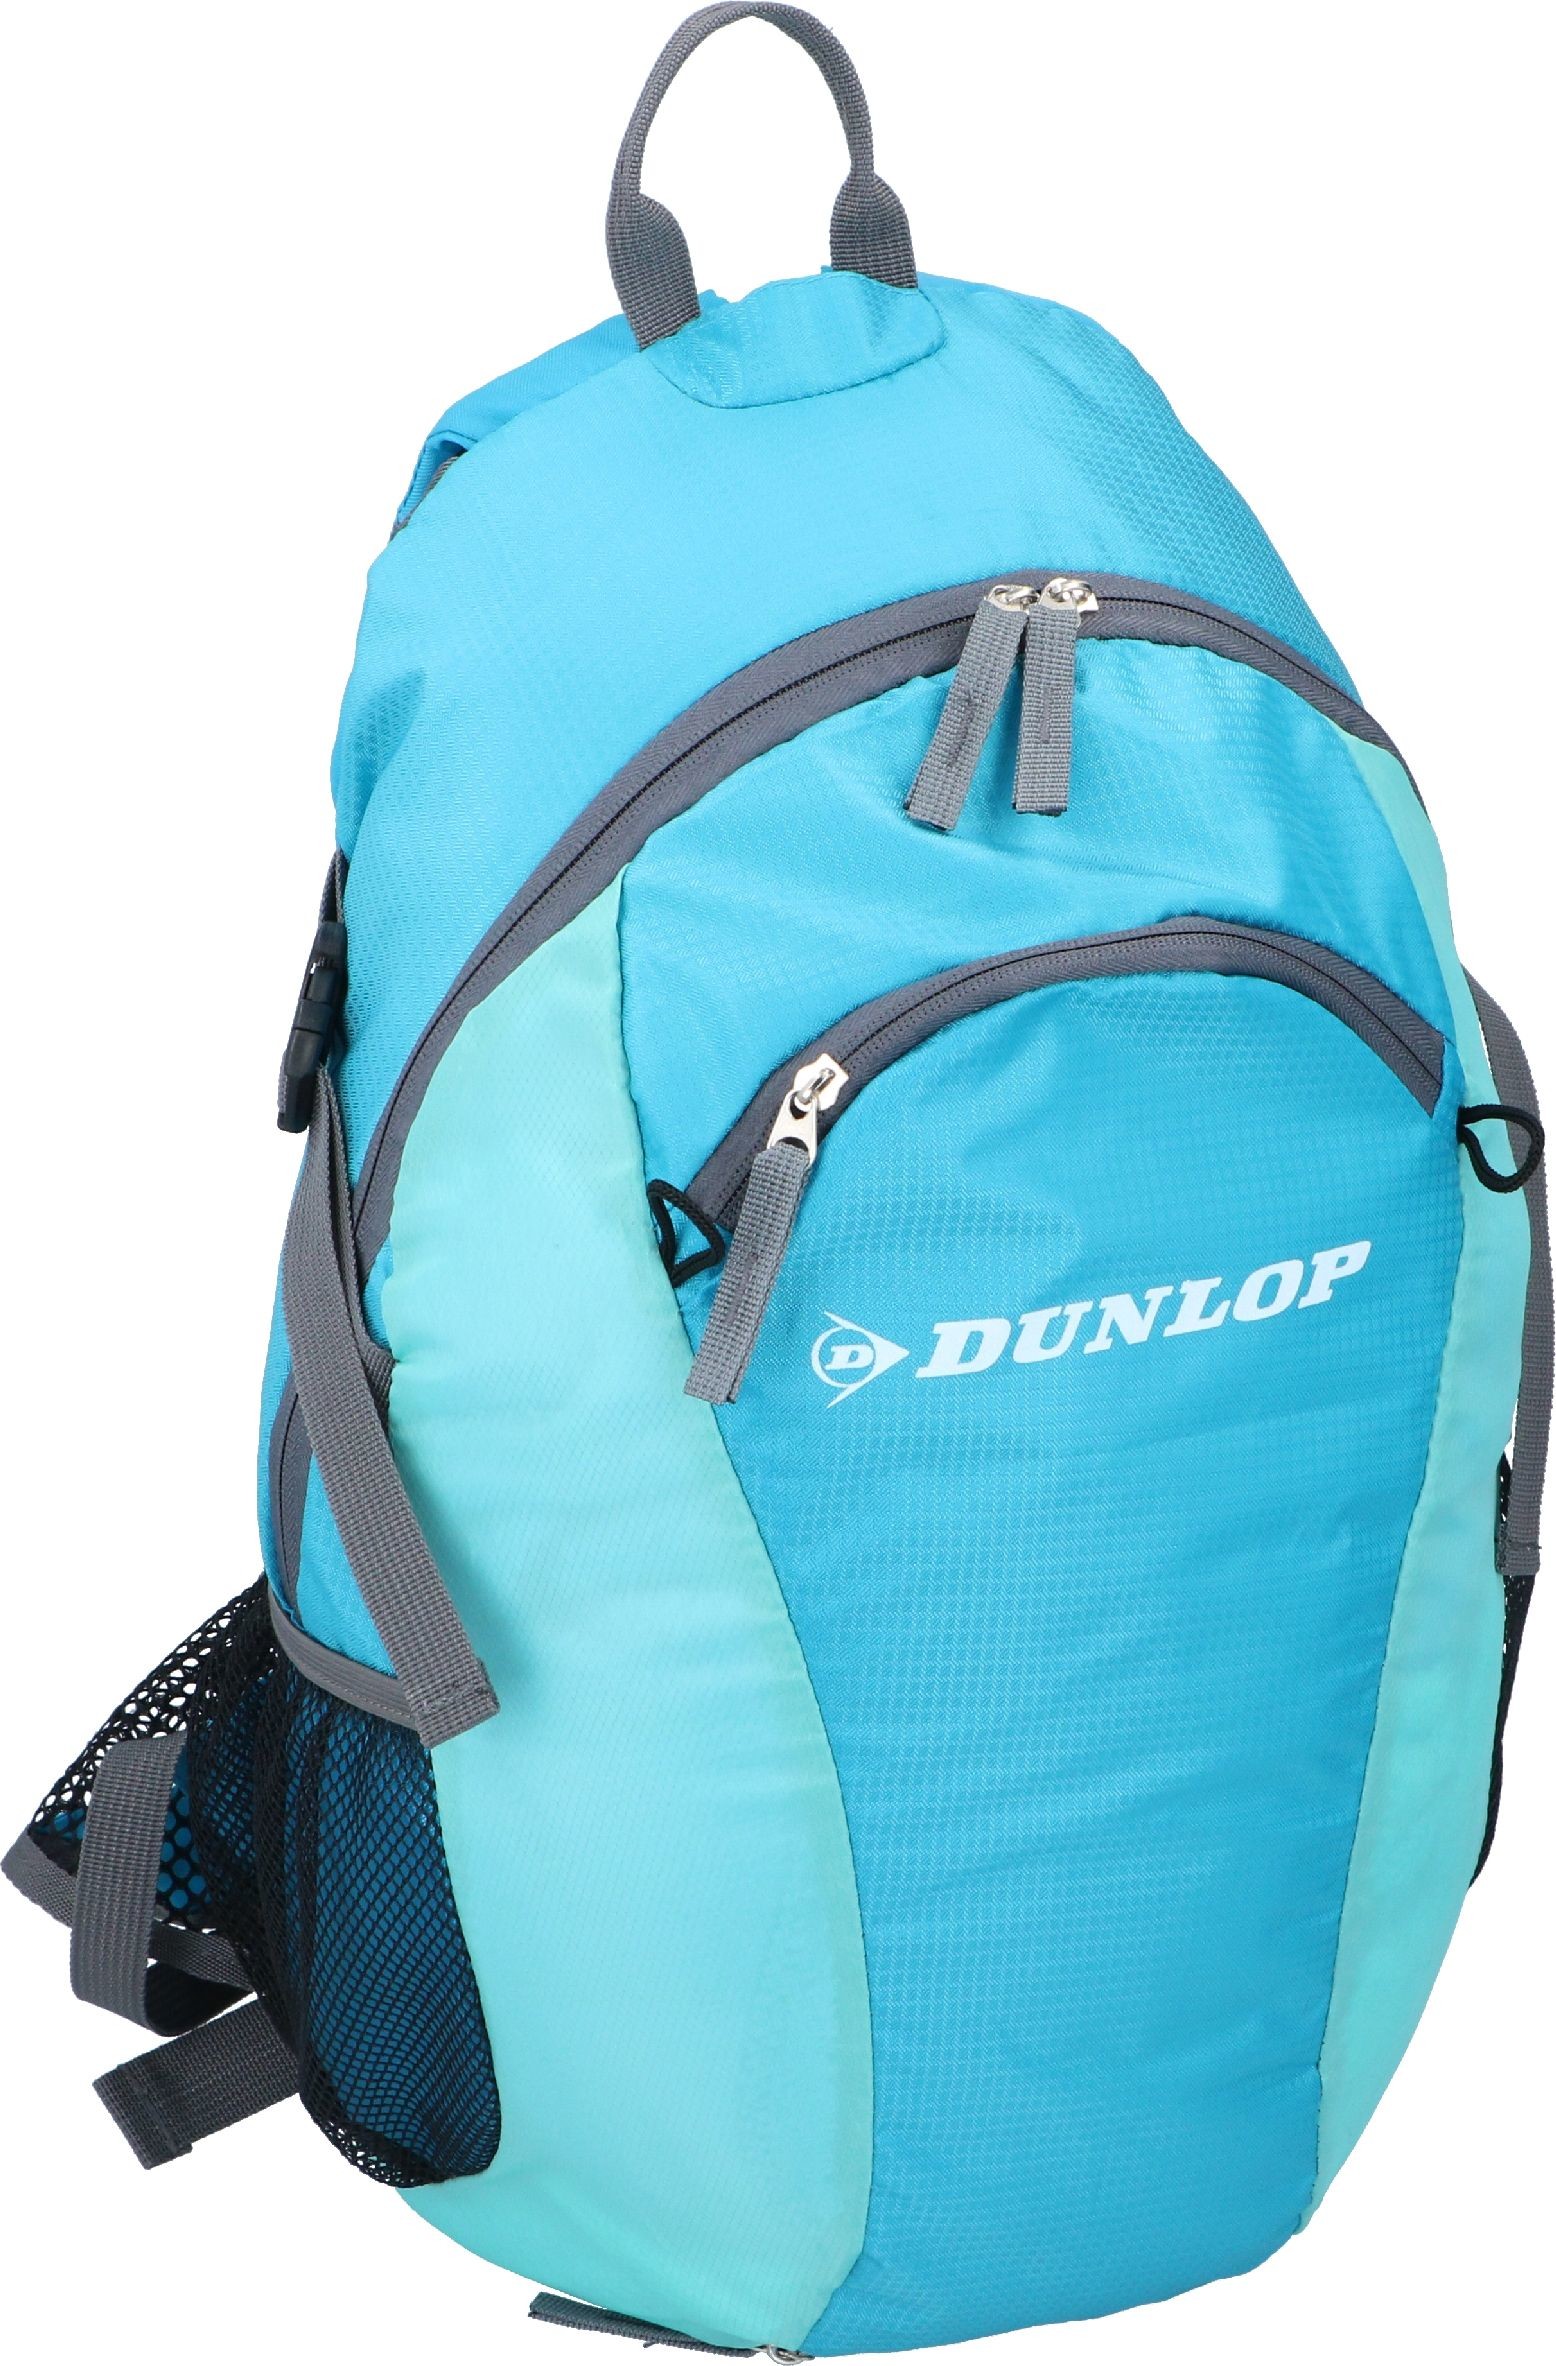 Dunlop Plecak szkolny turystyczny podróżny 24L E-24891